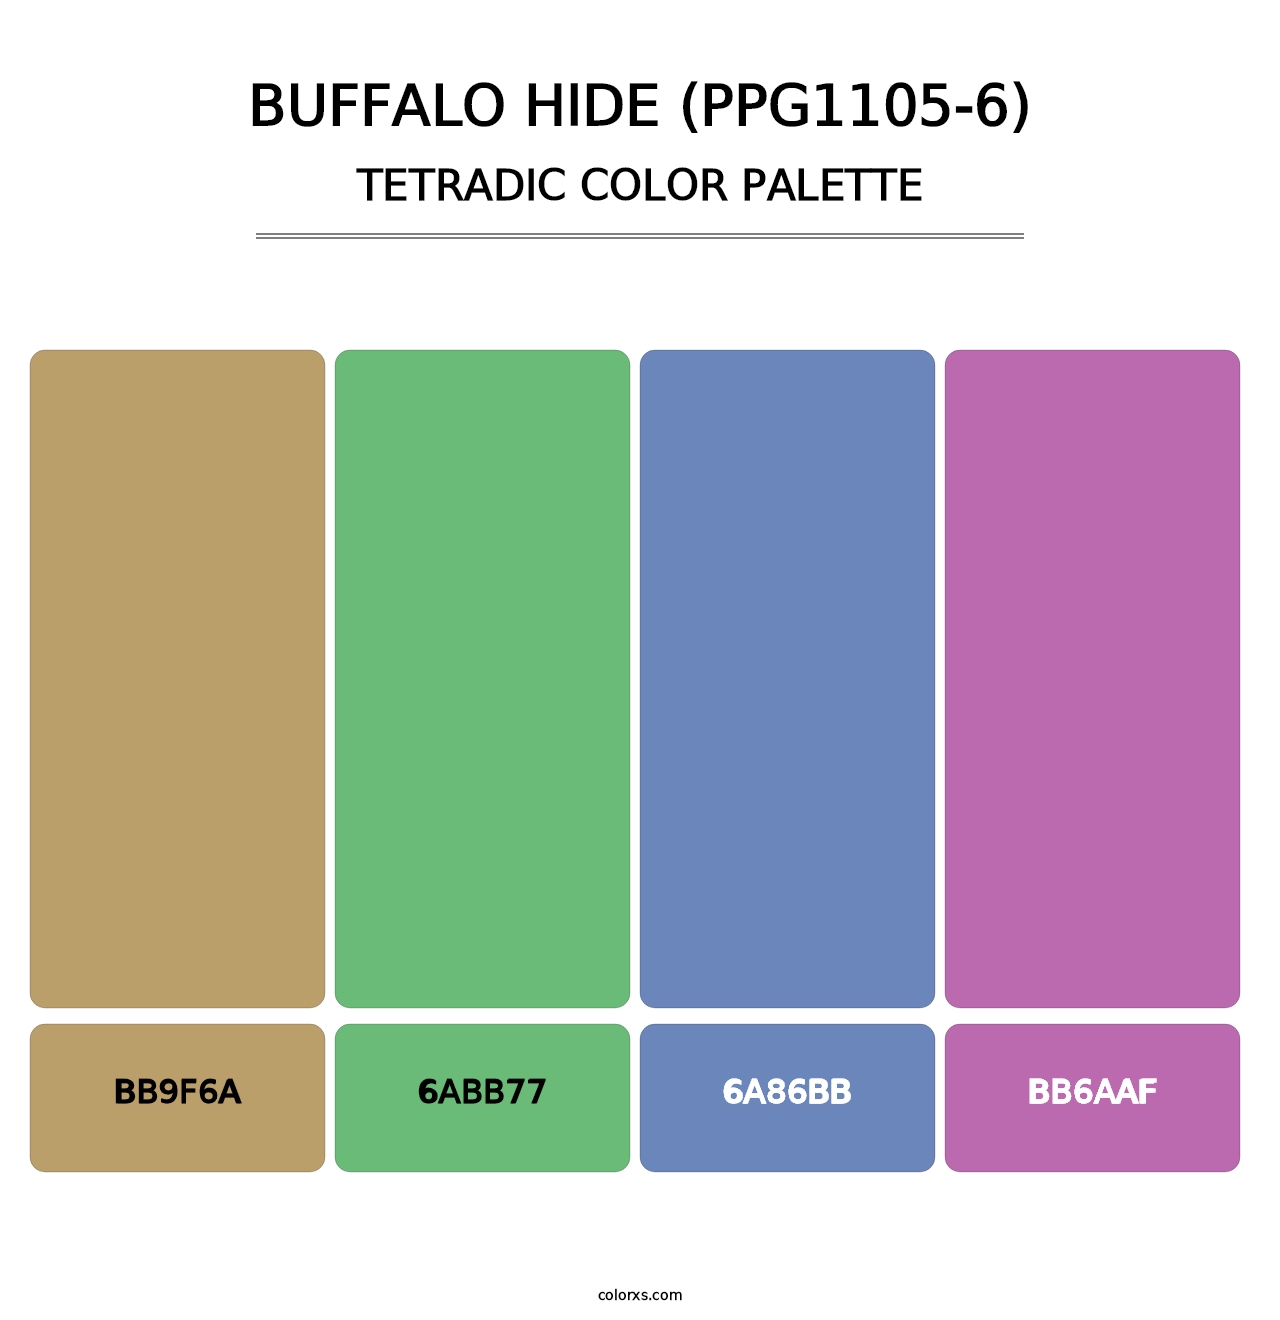 Buffalo Hide (PPG1105-6) - Tetradic Color Palette